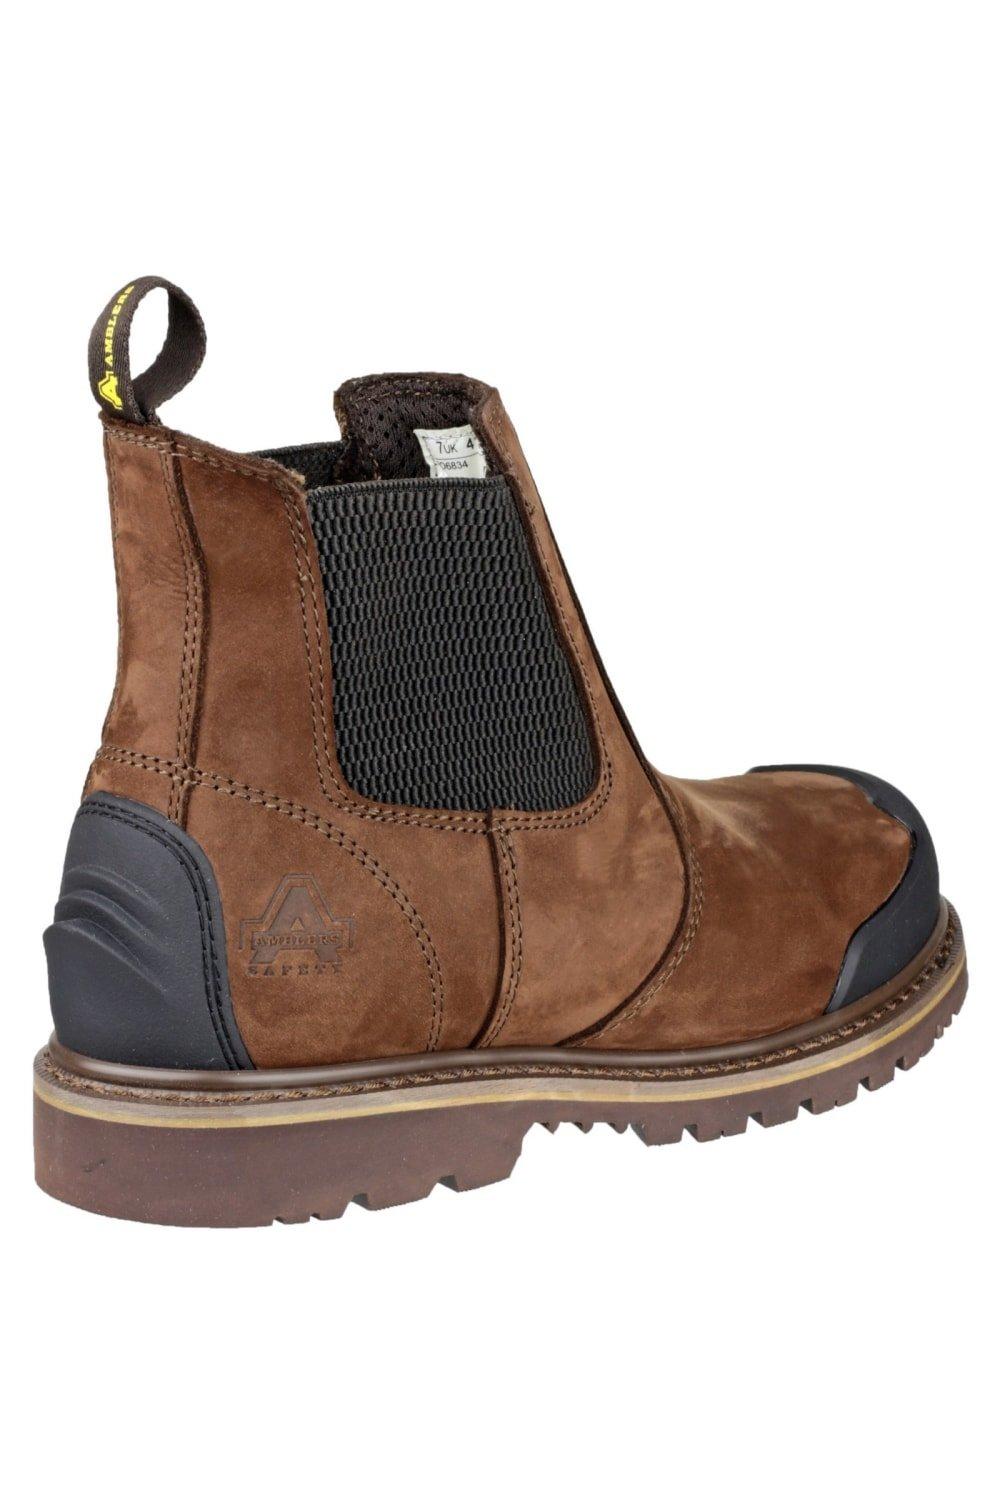 Защитные ботинки FS225 Amblers, коричневый